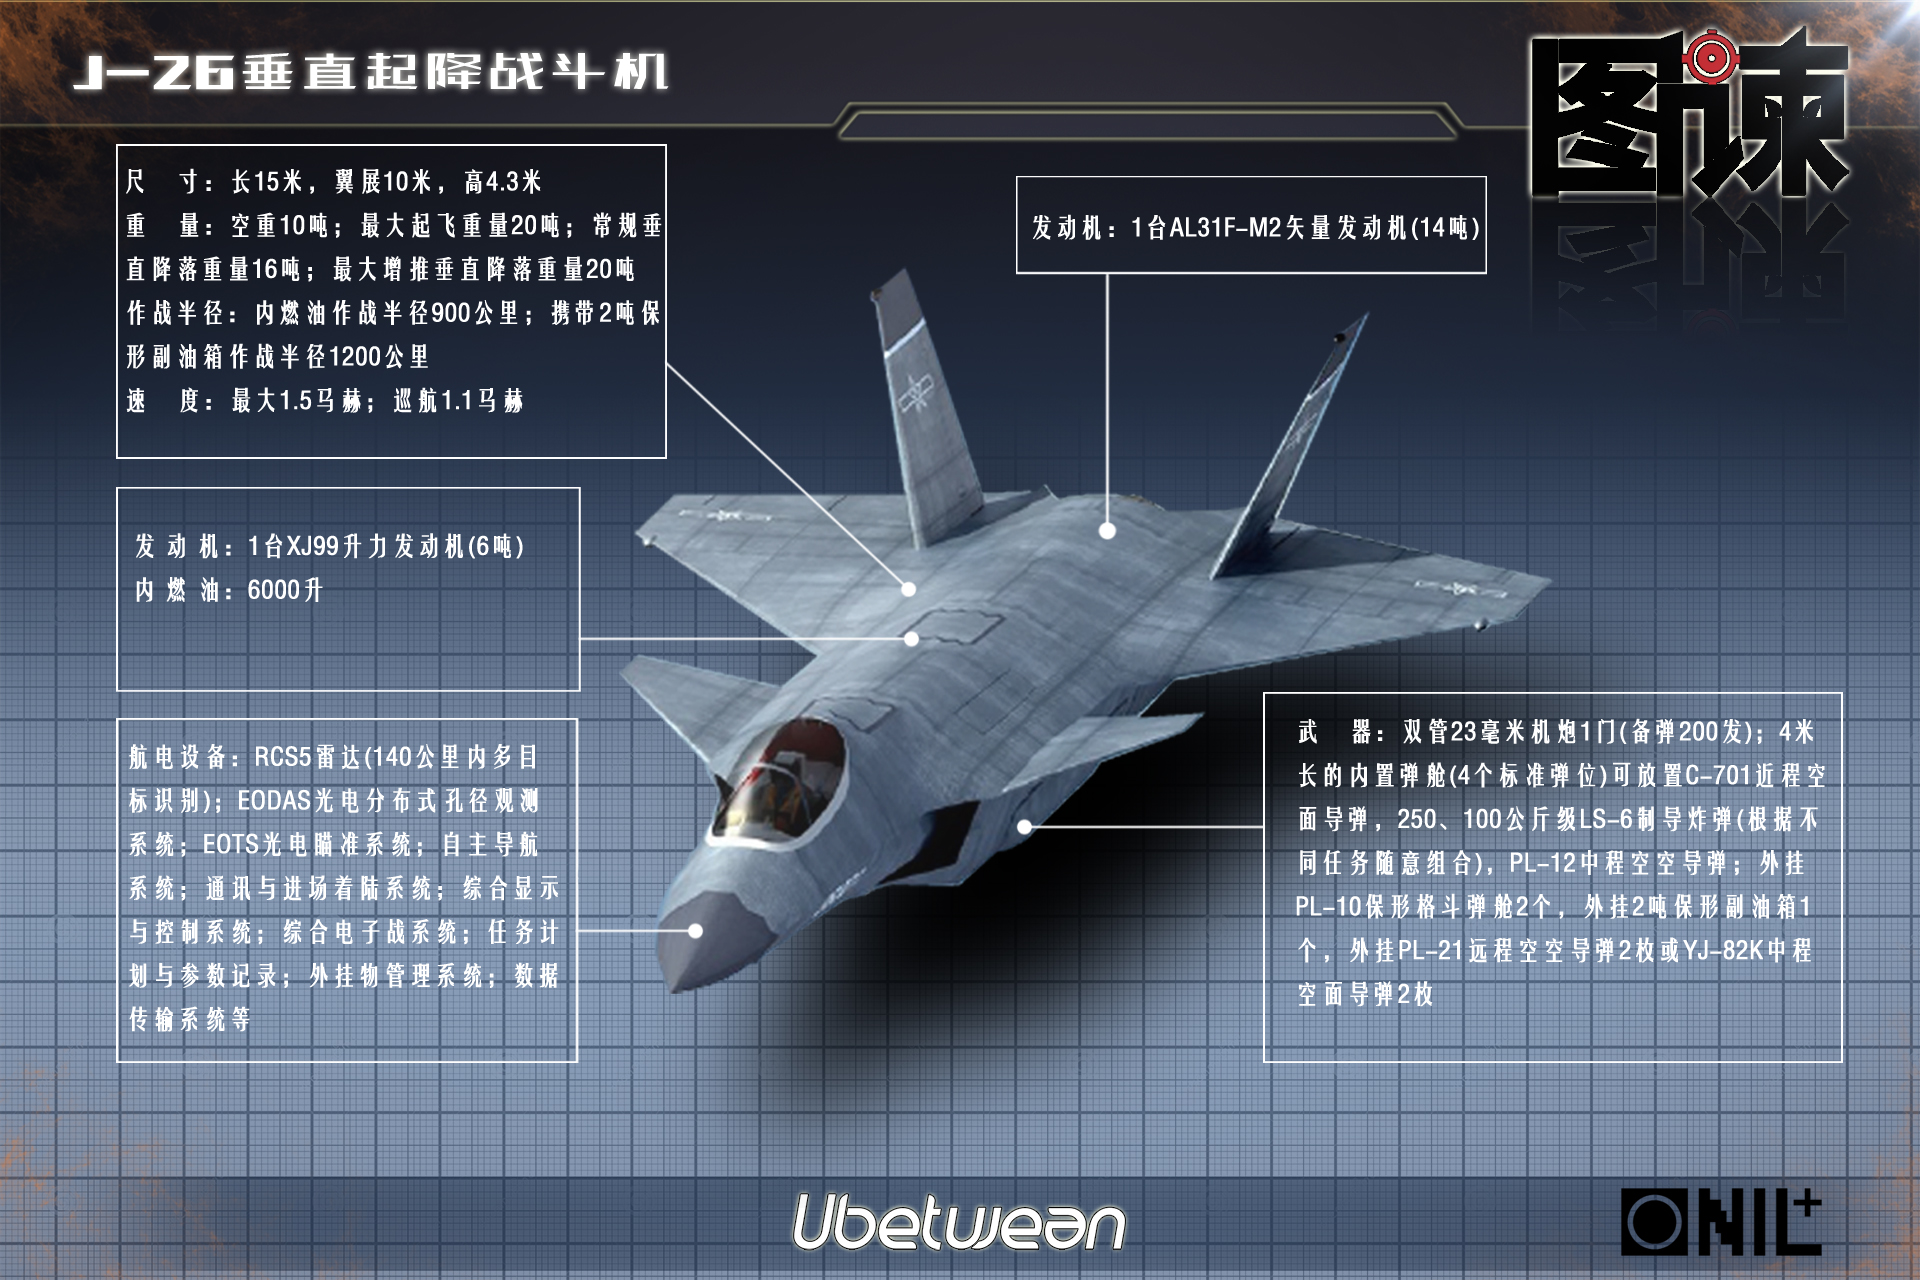 从这些设计来分析,歼26战机是一款专用的舰载垂直起降战机,整体定位和